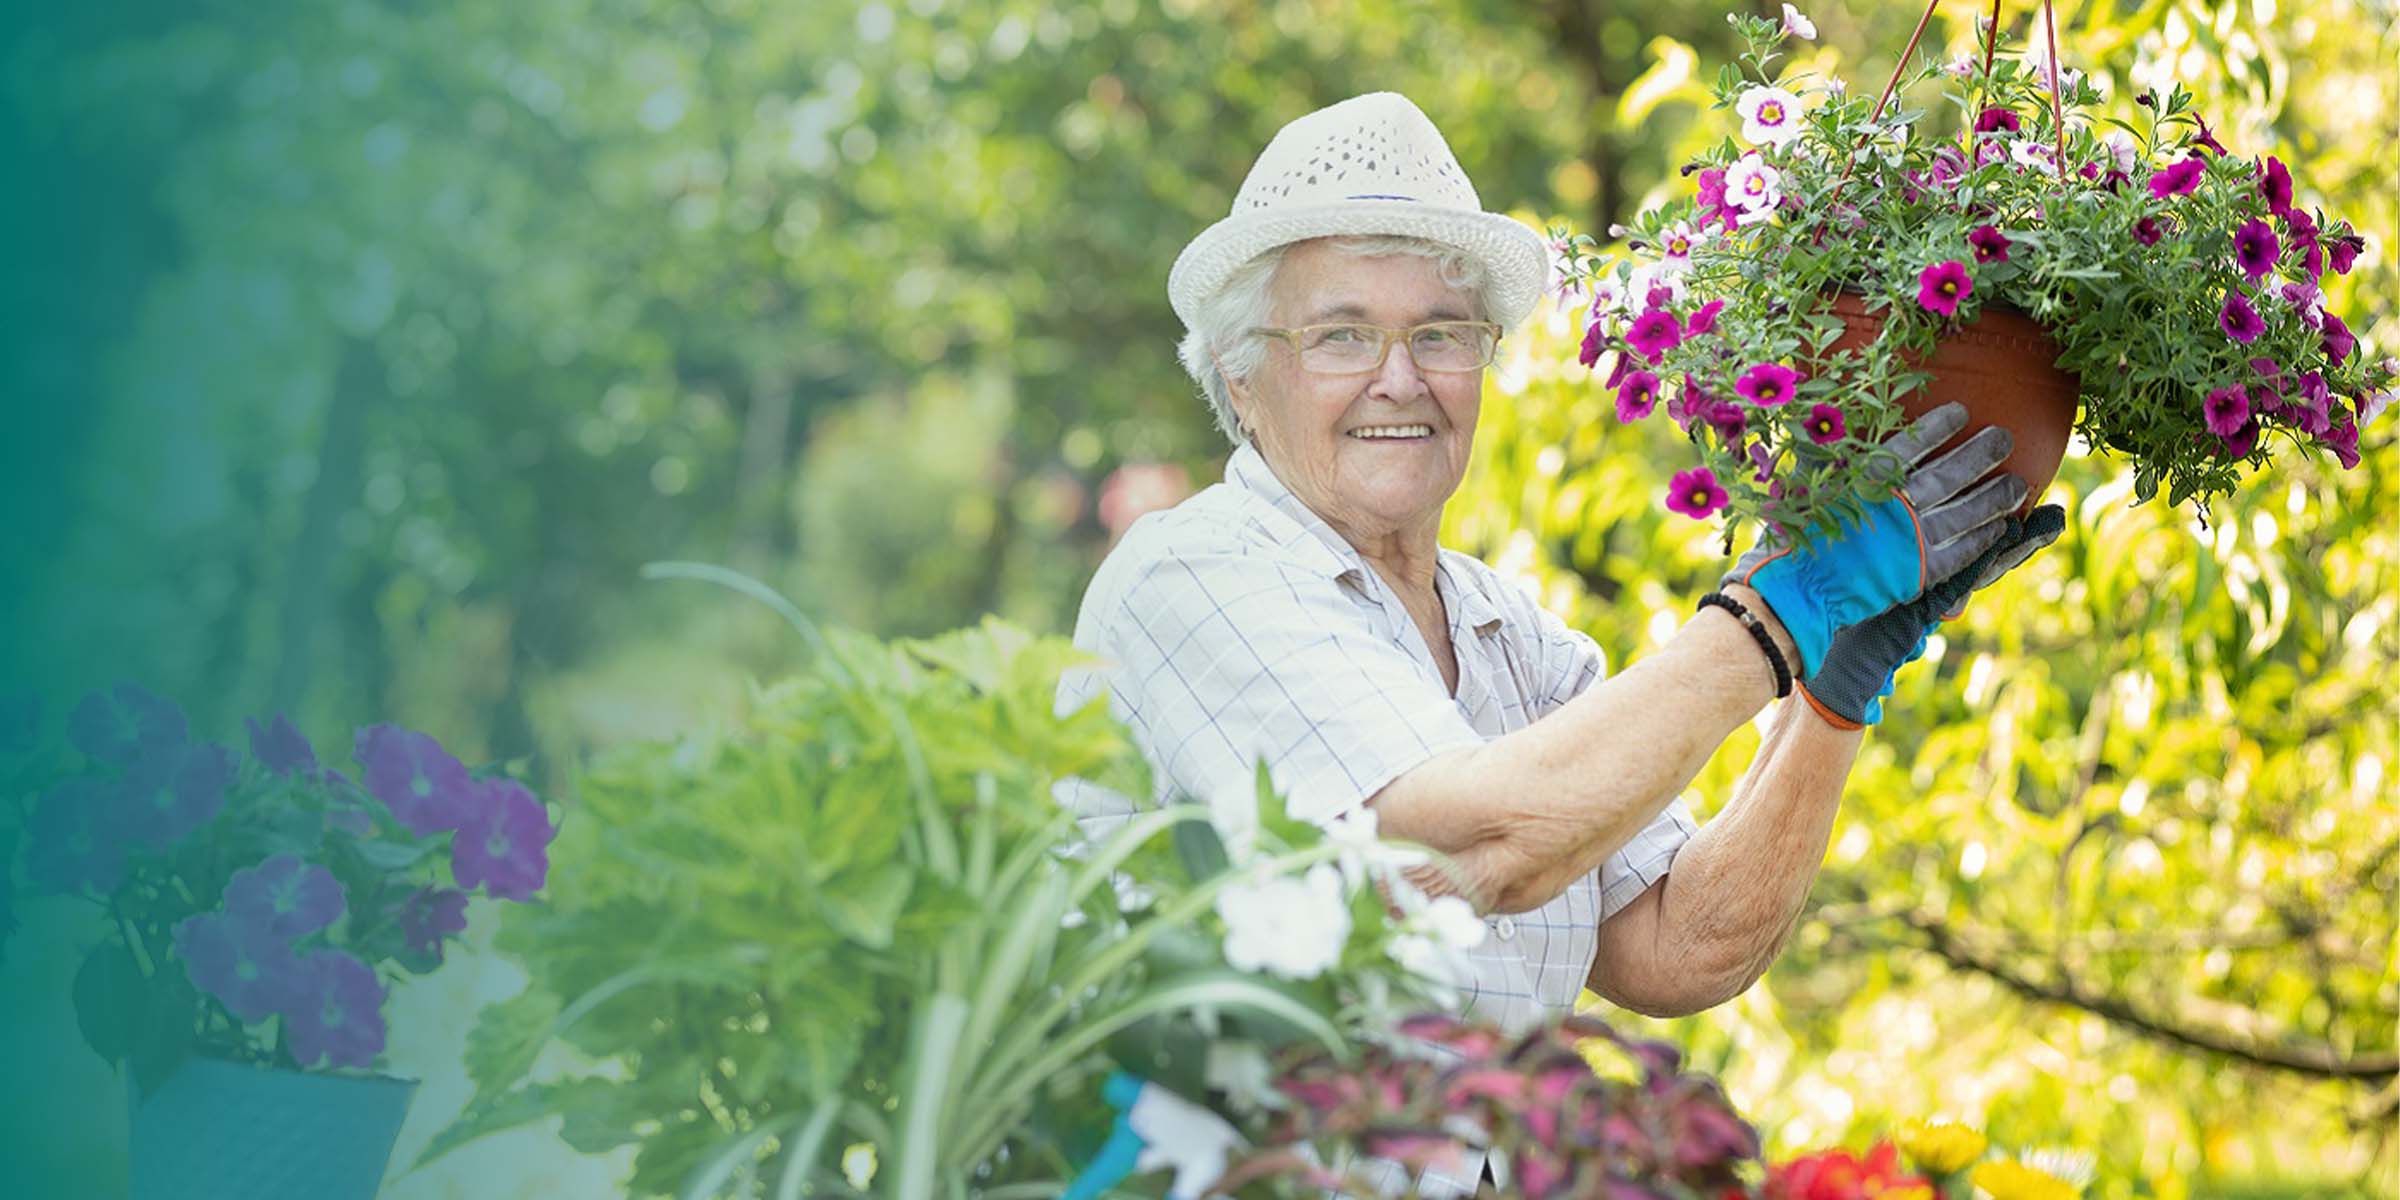 Seniorin mit Hut bei der Gartenarbeit in Blumengarten